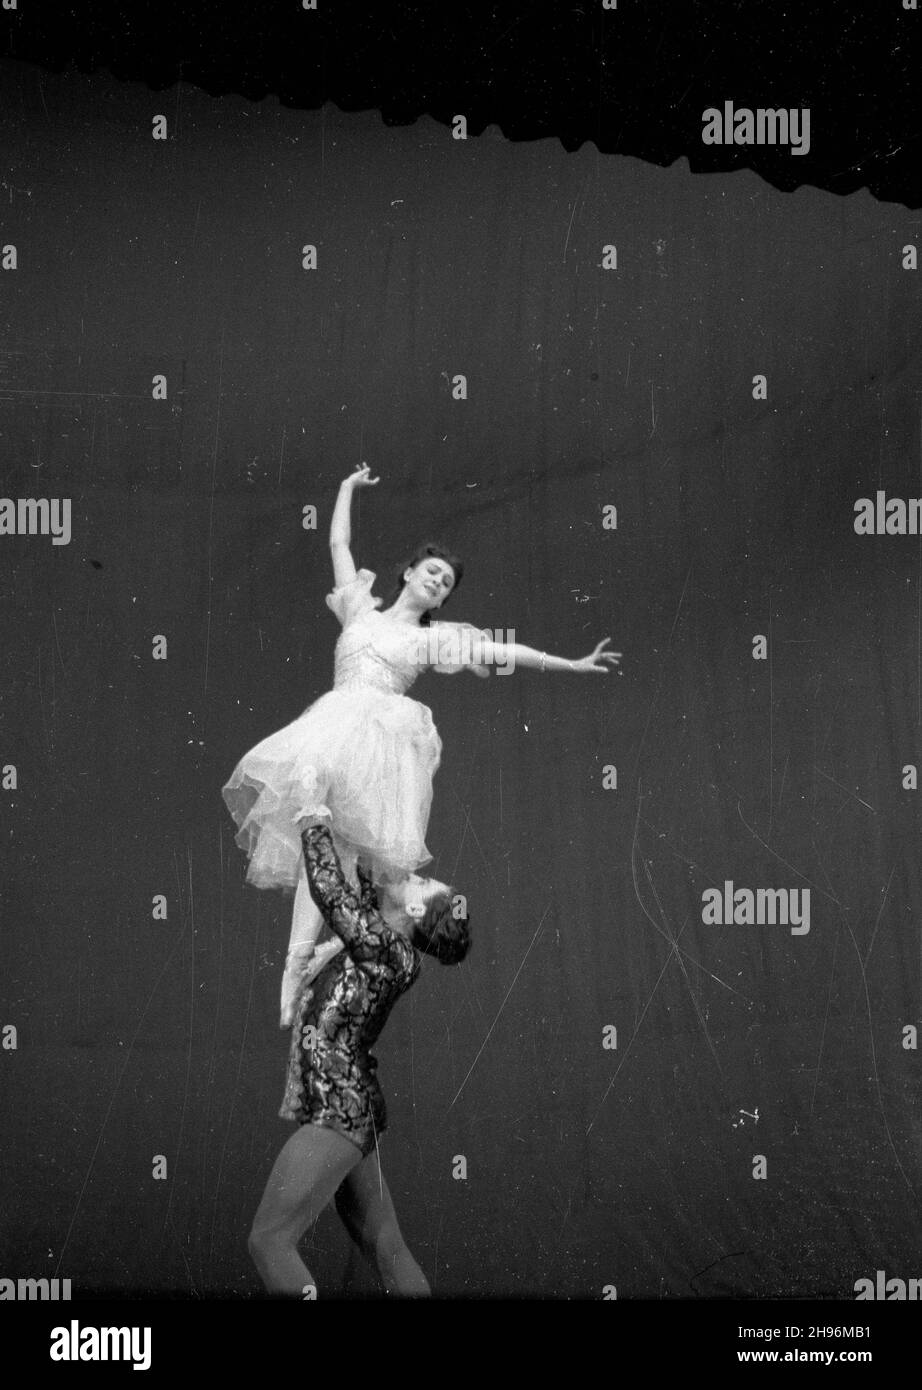 Warszawa, 1947-08-30. Wystêpy tancerzy radzieckich w Teatrze Wielkim. bb/mgs  PAP      Warsaw, Aug. 30, 1947. Performance of Soviet dancers in the Grand Theatre.   bb/mgs  PAP Stock Photo